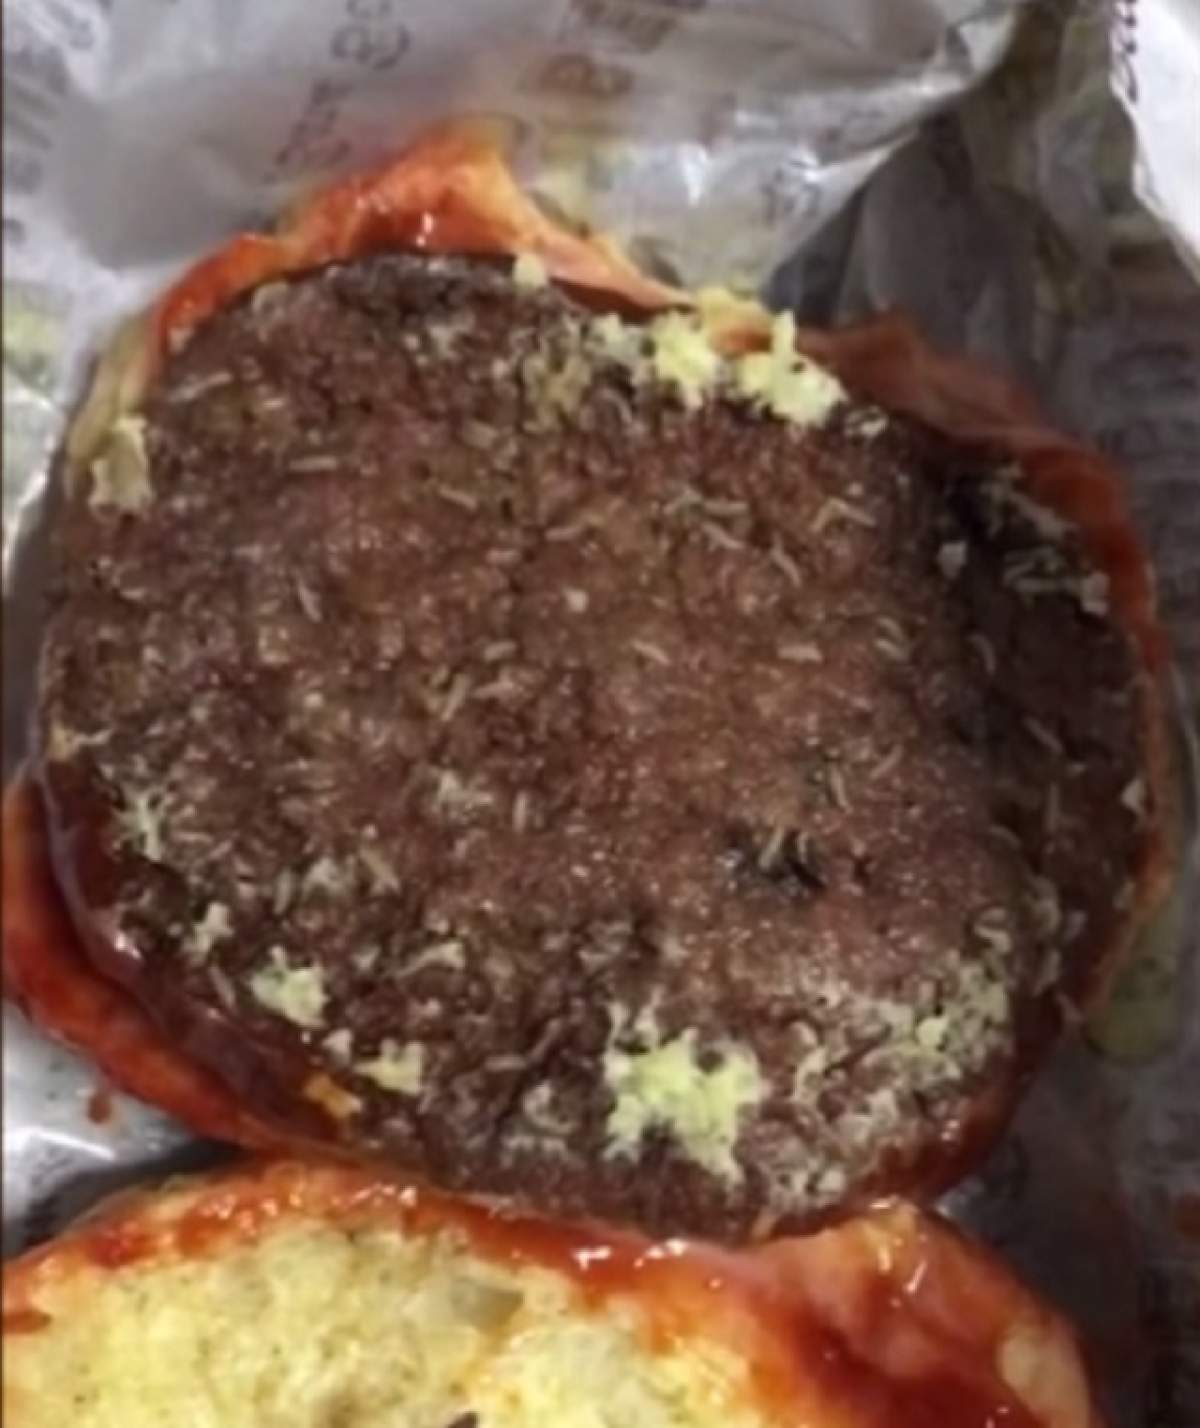 VIDEO / A cumpărat burgeri pentru familie, dar s-a speriat când a văzut ce era în eil! "A fost dezgustător"